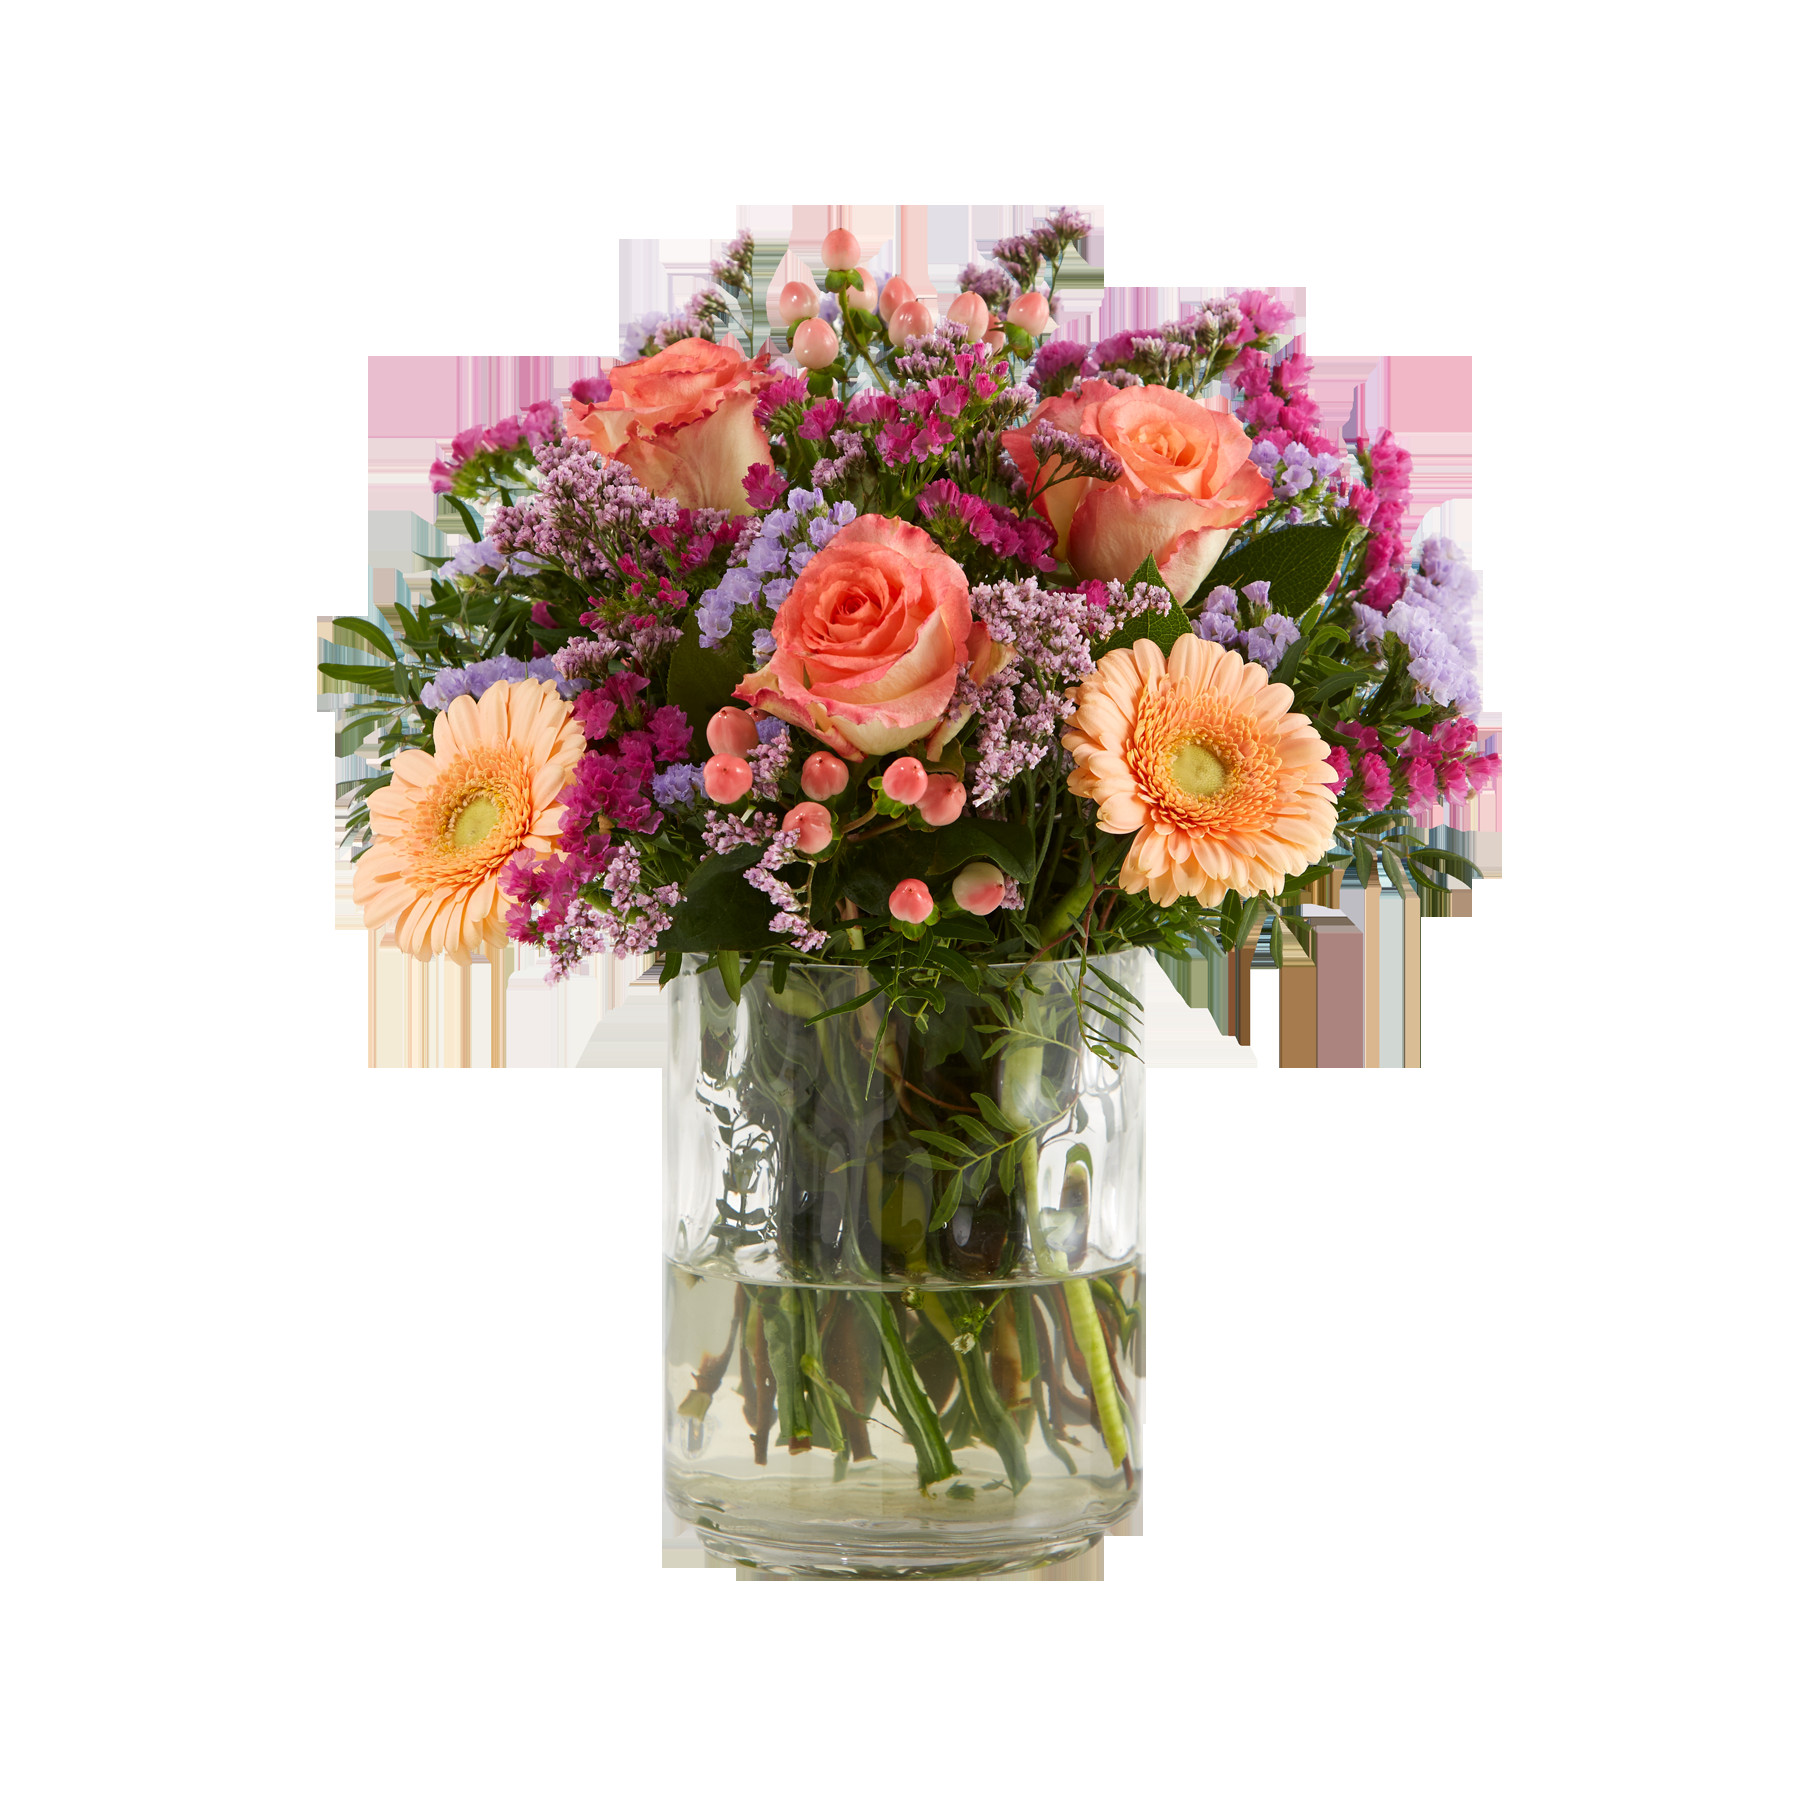 Blumen Zum Geburtstag
 Blumen zum Geburtstag › Blumenversand Vergleich